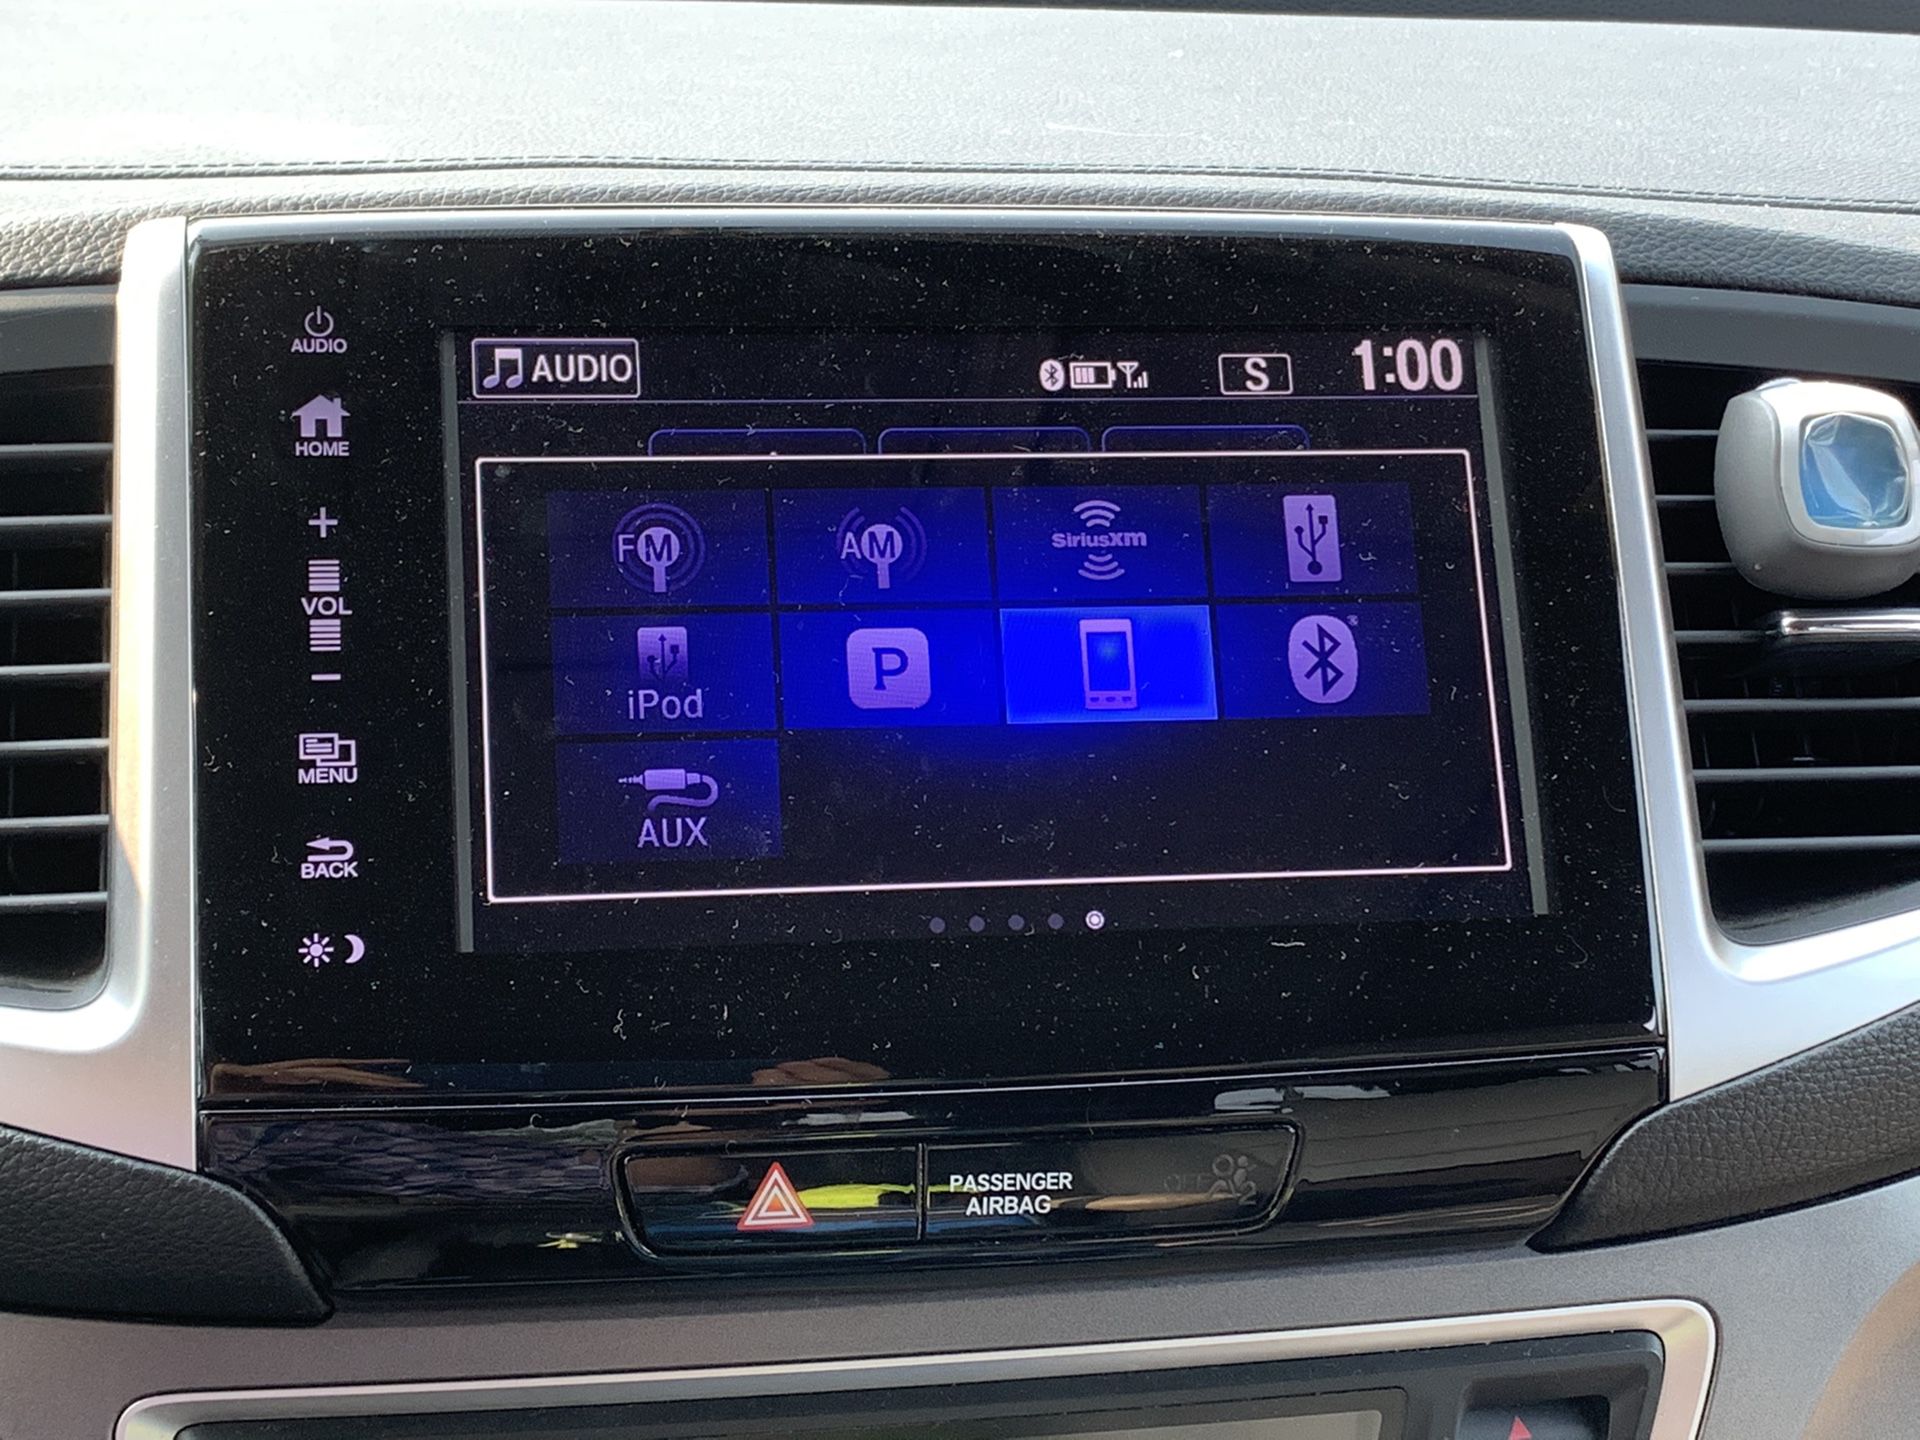 2016 Honda Pilot Radio 8” Display Screen